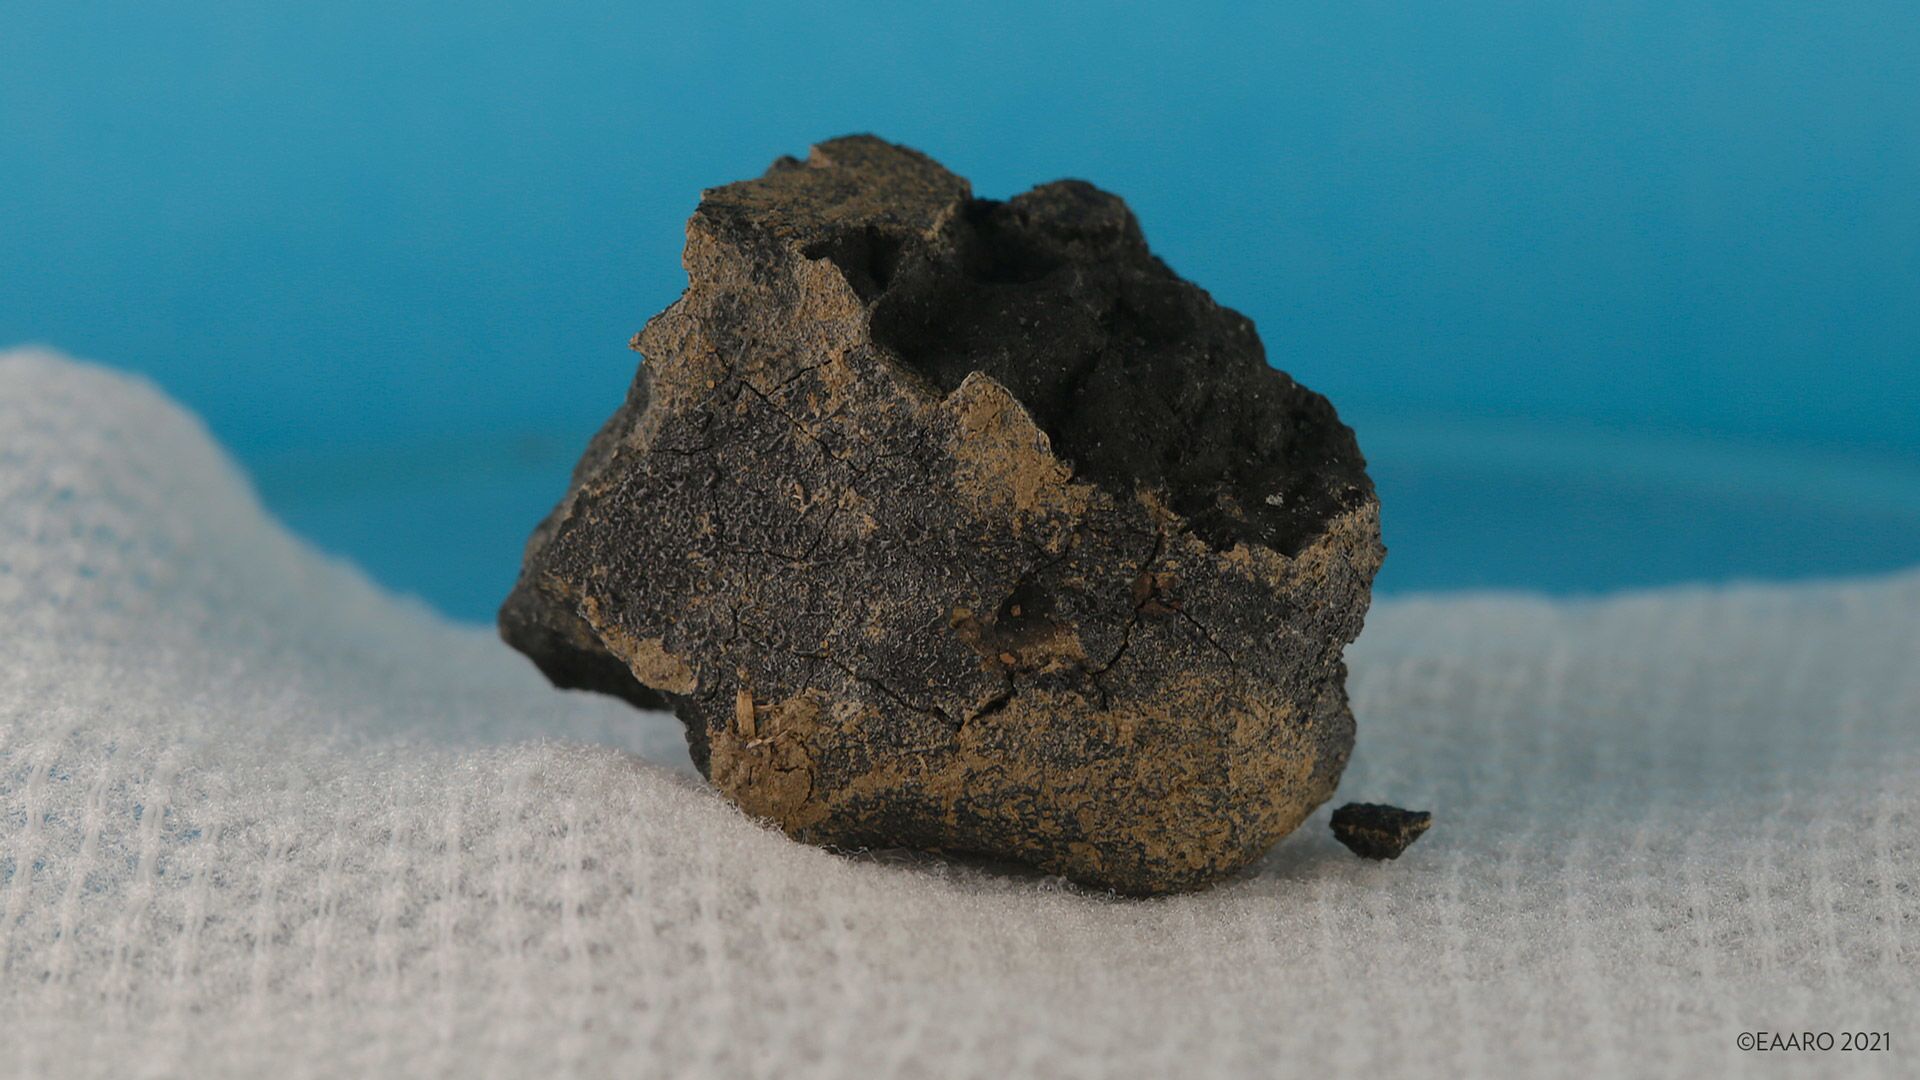 Fragmento de meteorito de 4,6 bilhões de anos encontrado em pegada de cavalo (FOTO) - Sputnik Brasil, 1920, 22.07.2021